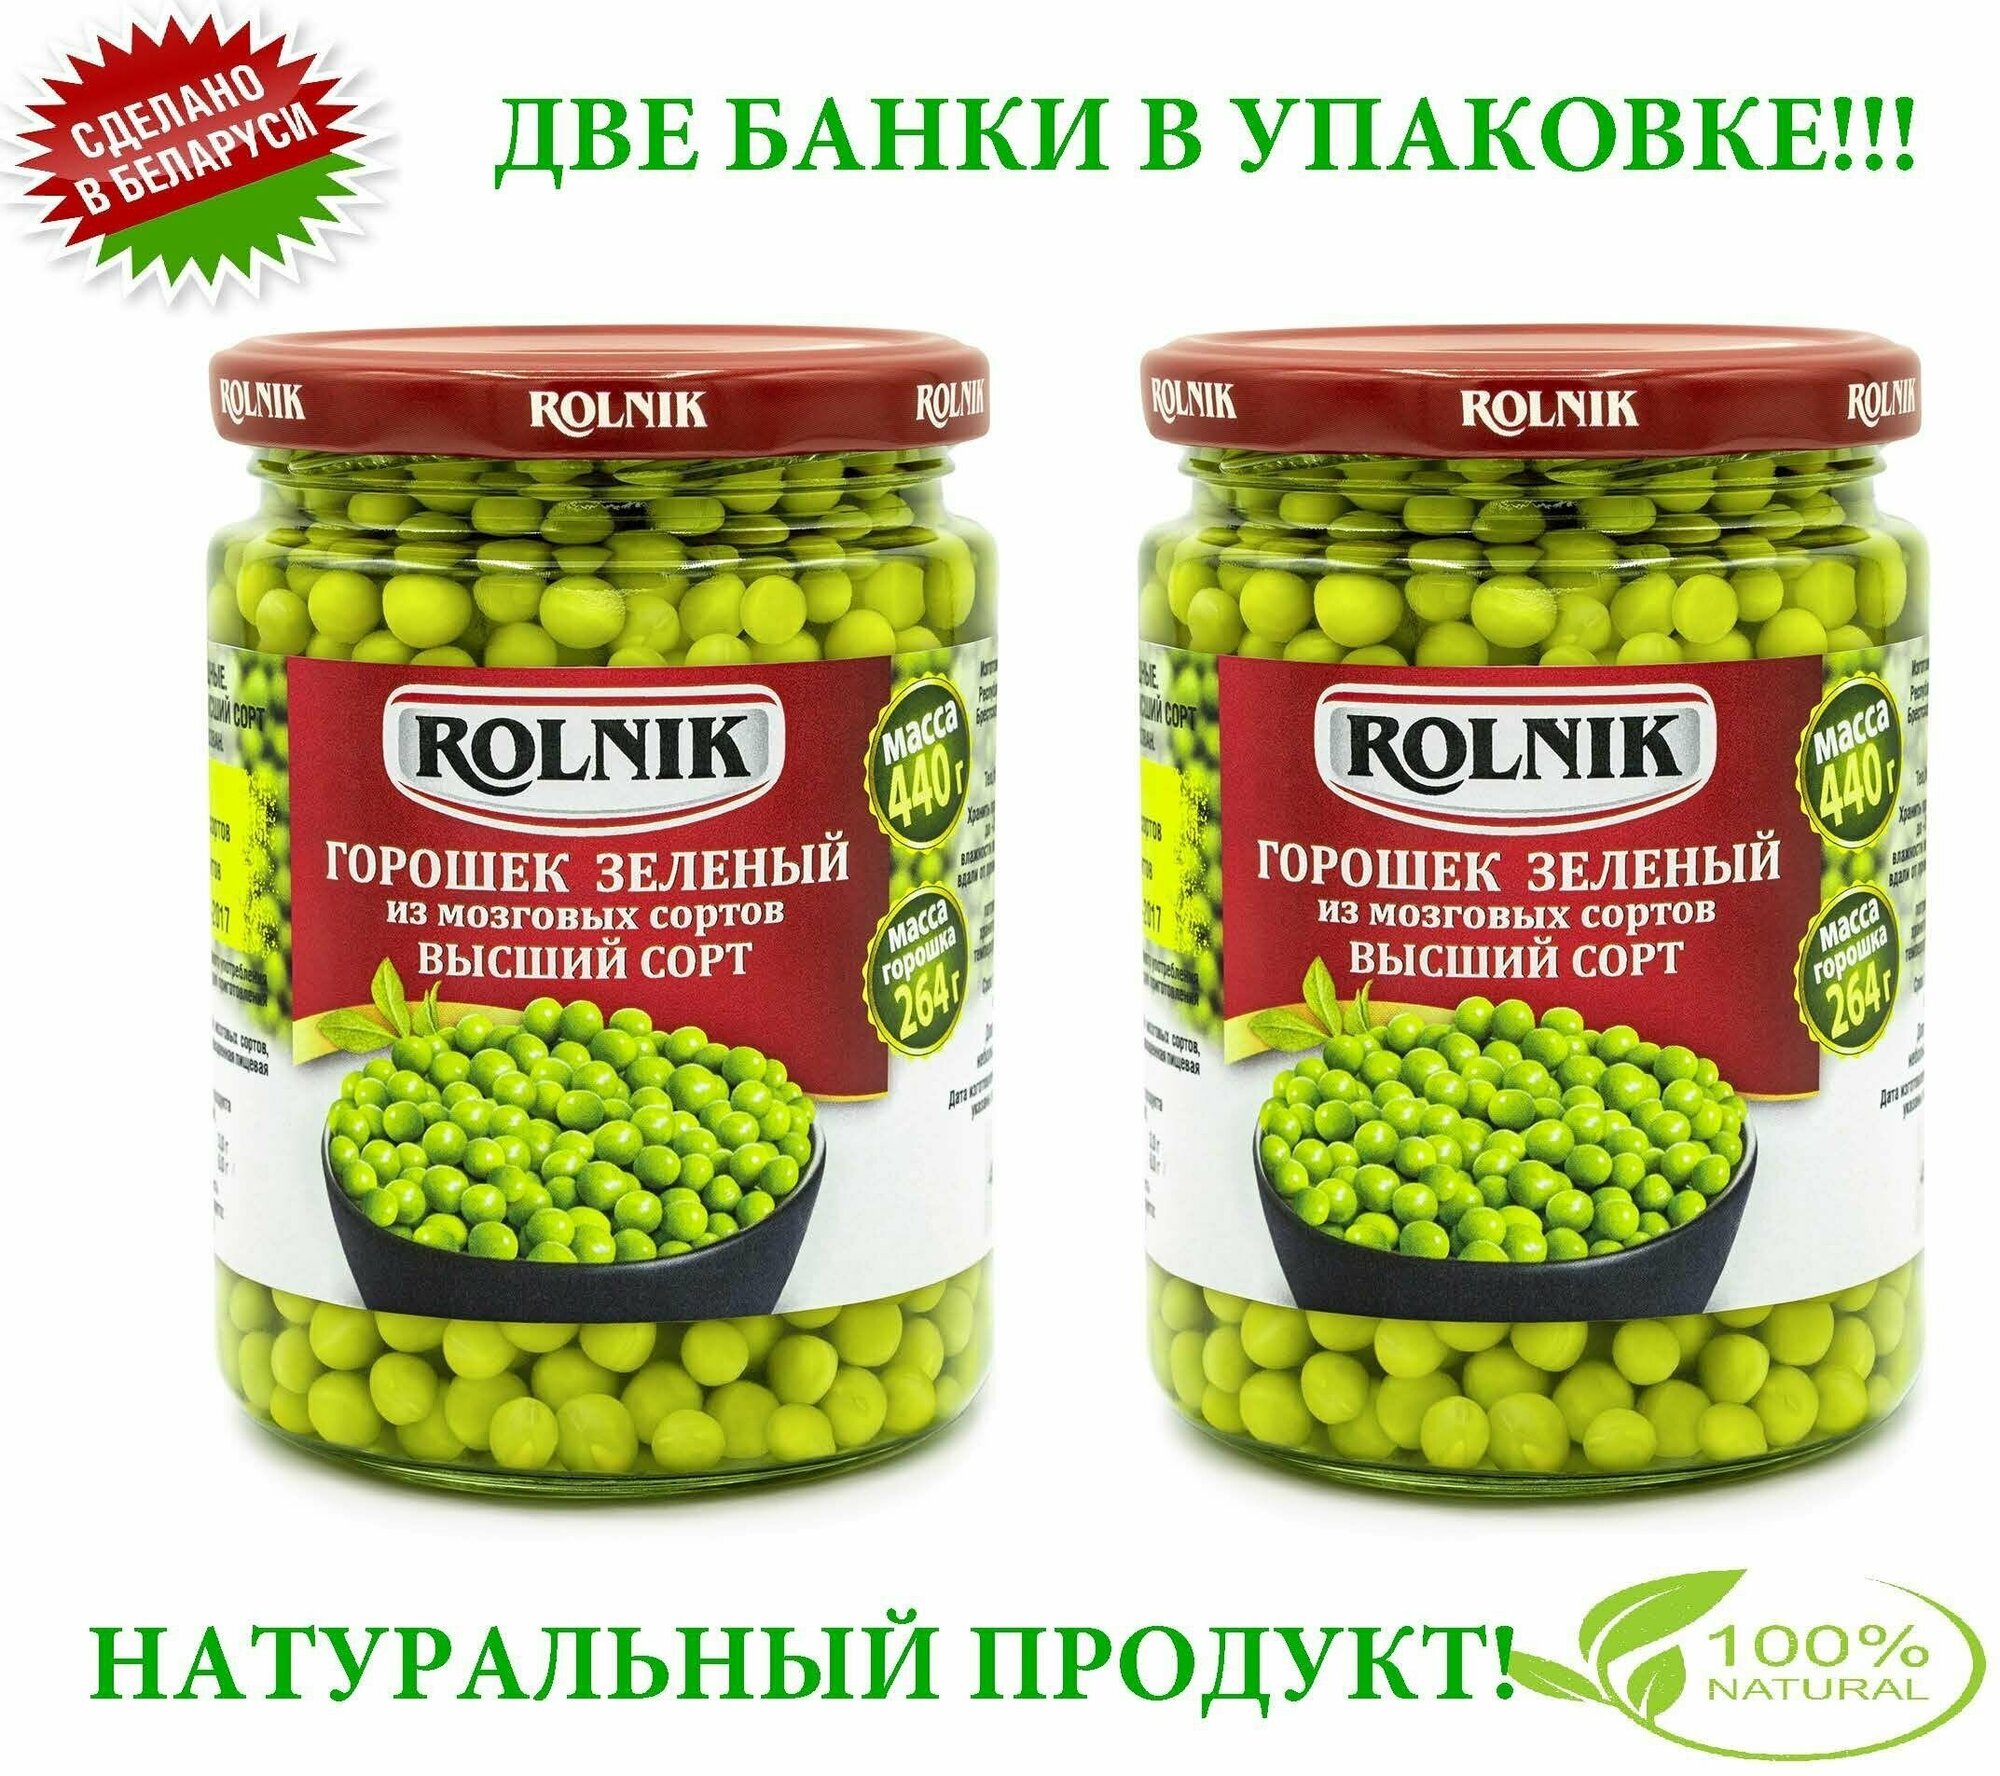 ROLNIK Горошек зелёный из мозговых сортов Высший сорт, консервы овощные, 2 банки по 0,42л /450г - фотография № 1